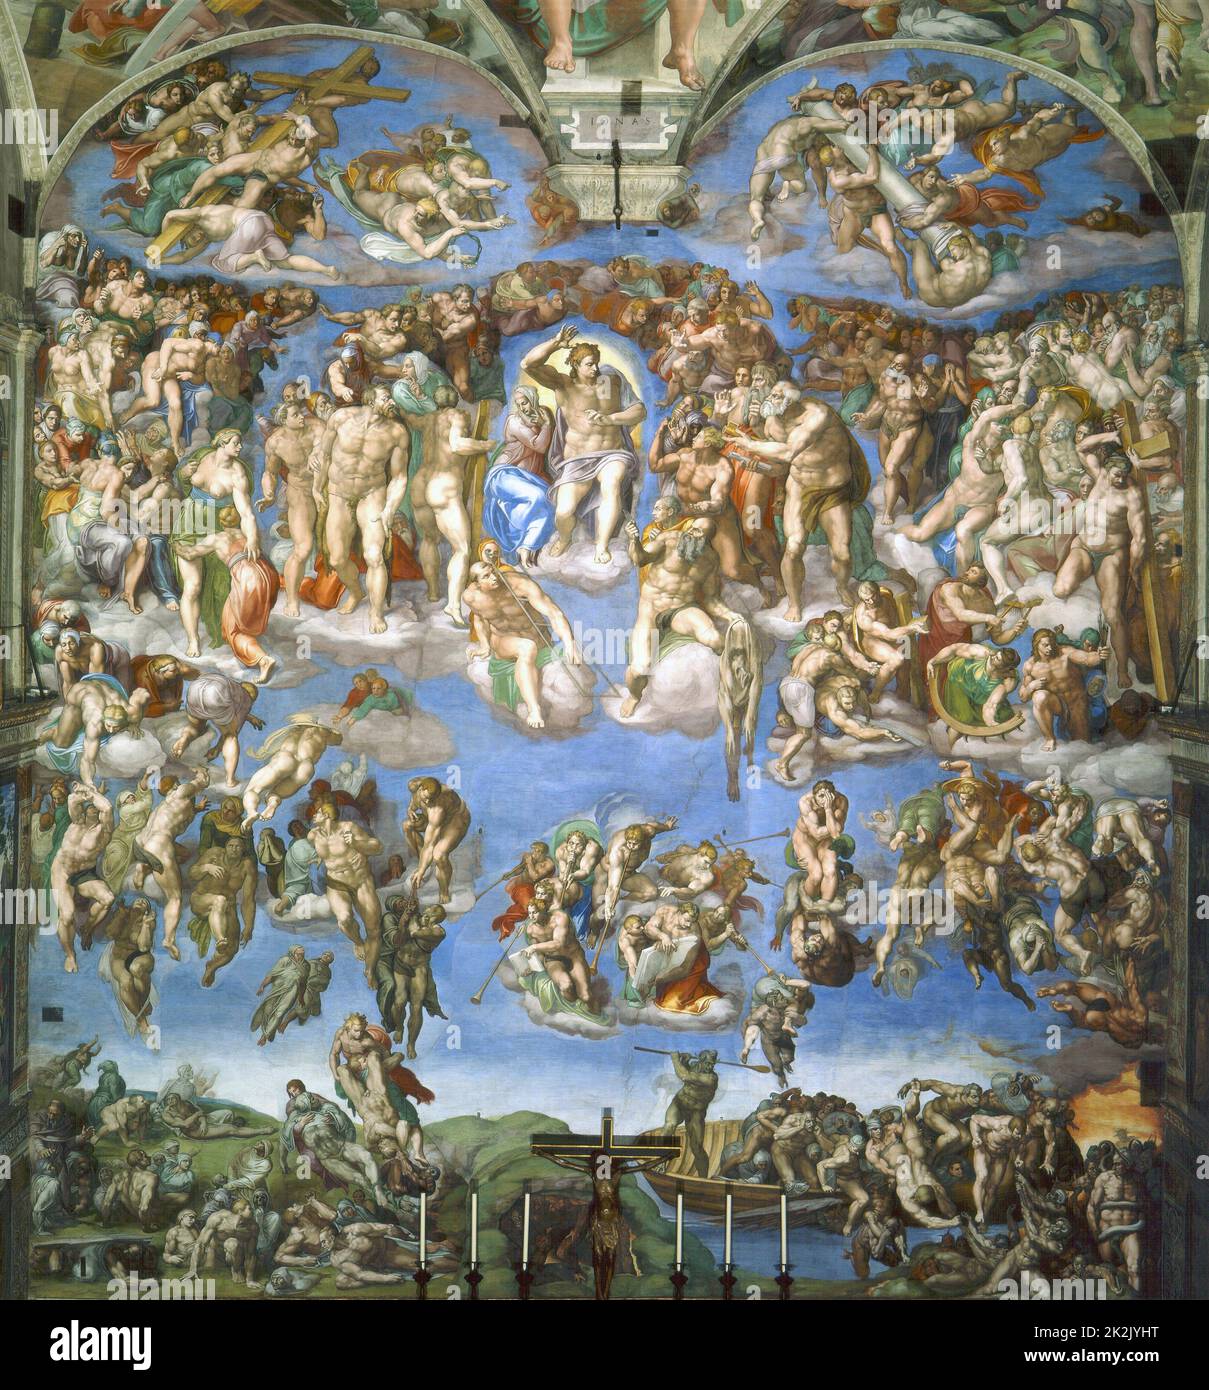 Das jüngste Gericht, gemalt von Michelangelo. Fresko der Sixtinischen Kapelle (Vatikanstadt). 13,7 m x 12 m zwischen 1536 und 1541. Stockfoto